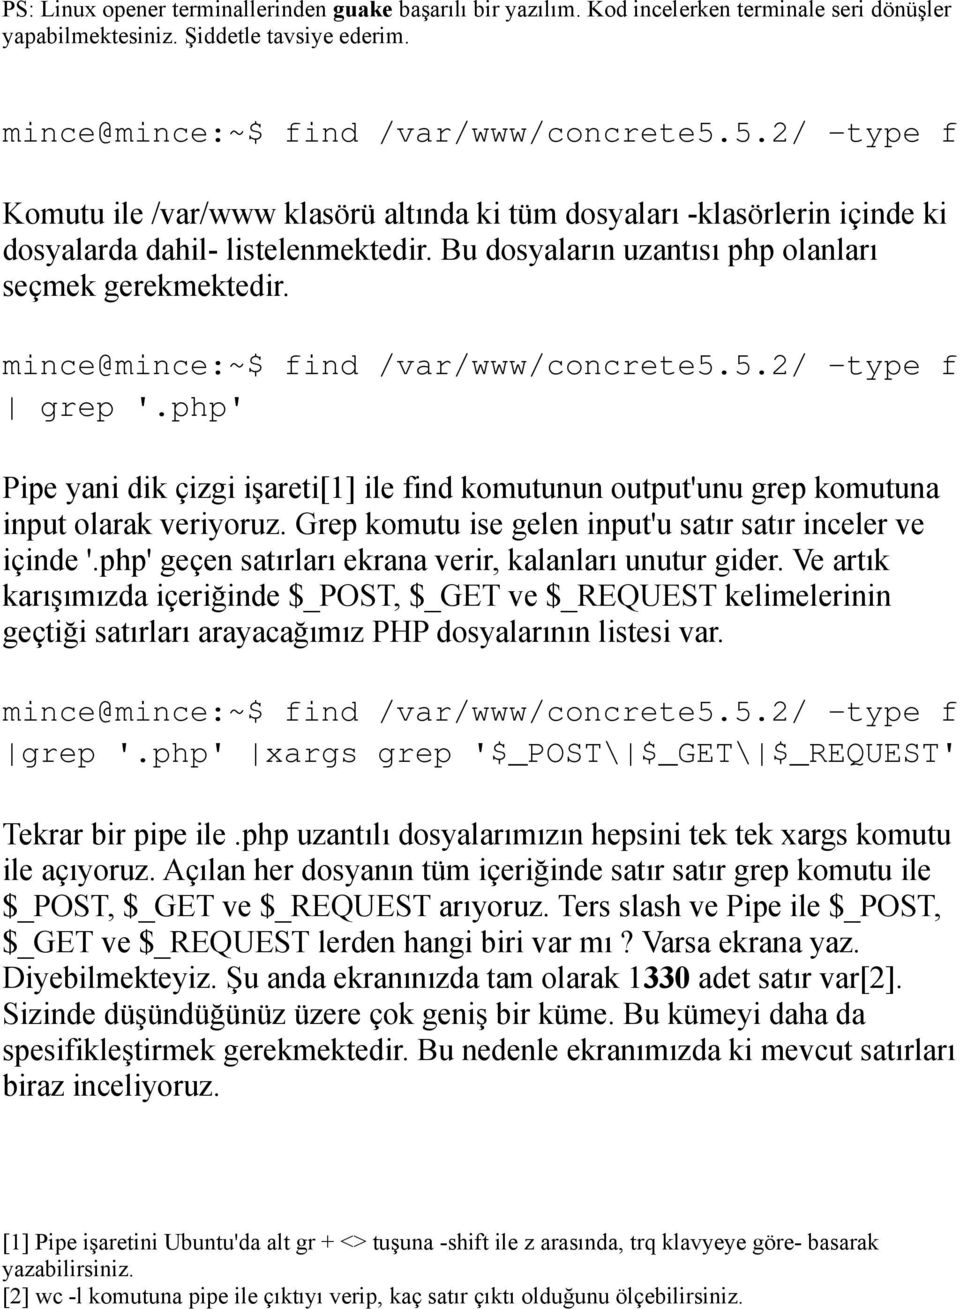 mince@mince:~$ find /var/www/concrete5.5.2/ -type f grep '.php' Pipe yani dik çizgi işareti[1] ile find komutunun output'unu grep komutuna input olarak veriyoruz.